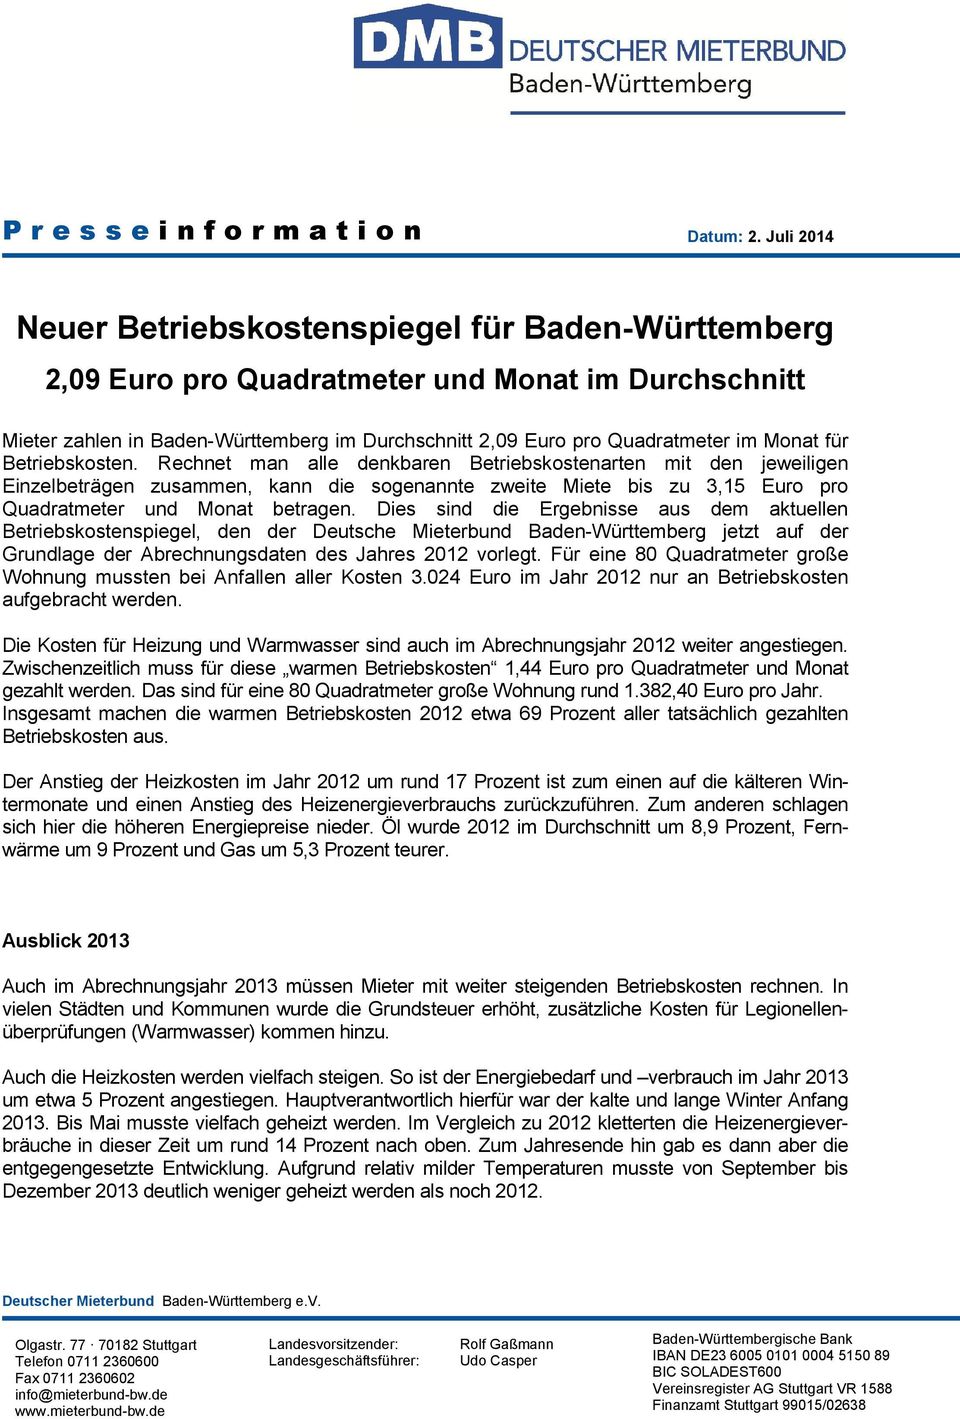 Dies sind die Ergebnisse aus dem aktuellen Betriebskostenspiegel, den der Deutsche Mieterbund Baden-Württemberg jetzt auf der Grundlage der Abrechnungsdaten des Jahres 2012 vorlegt.